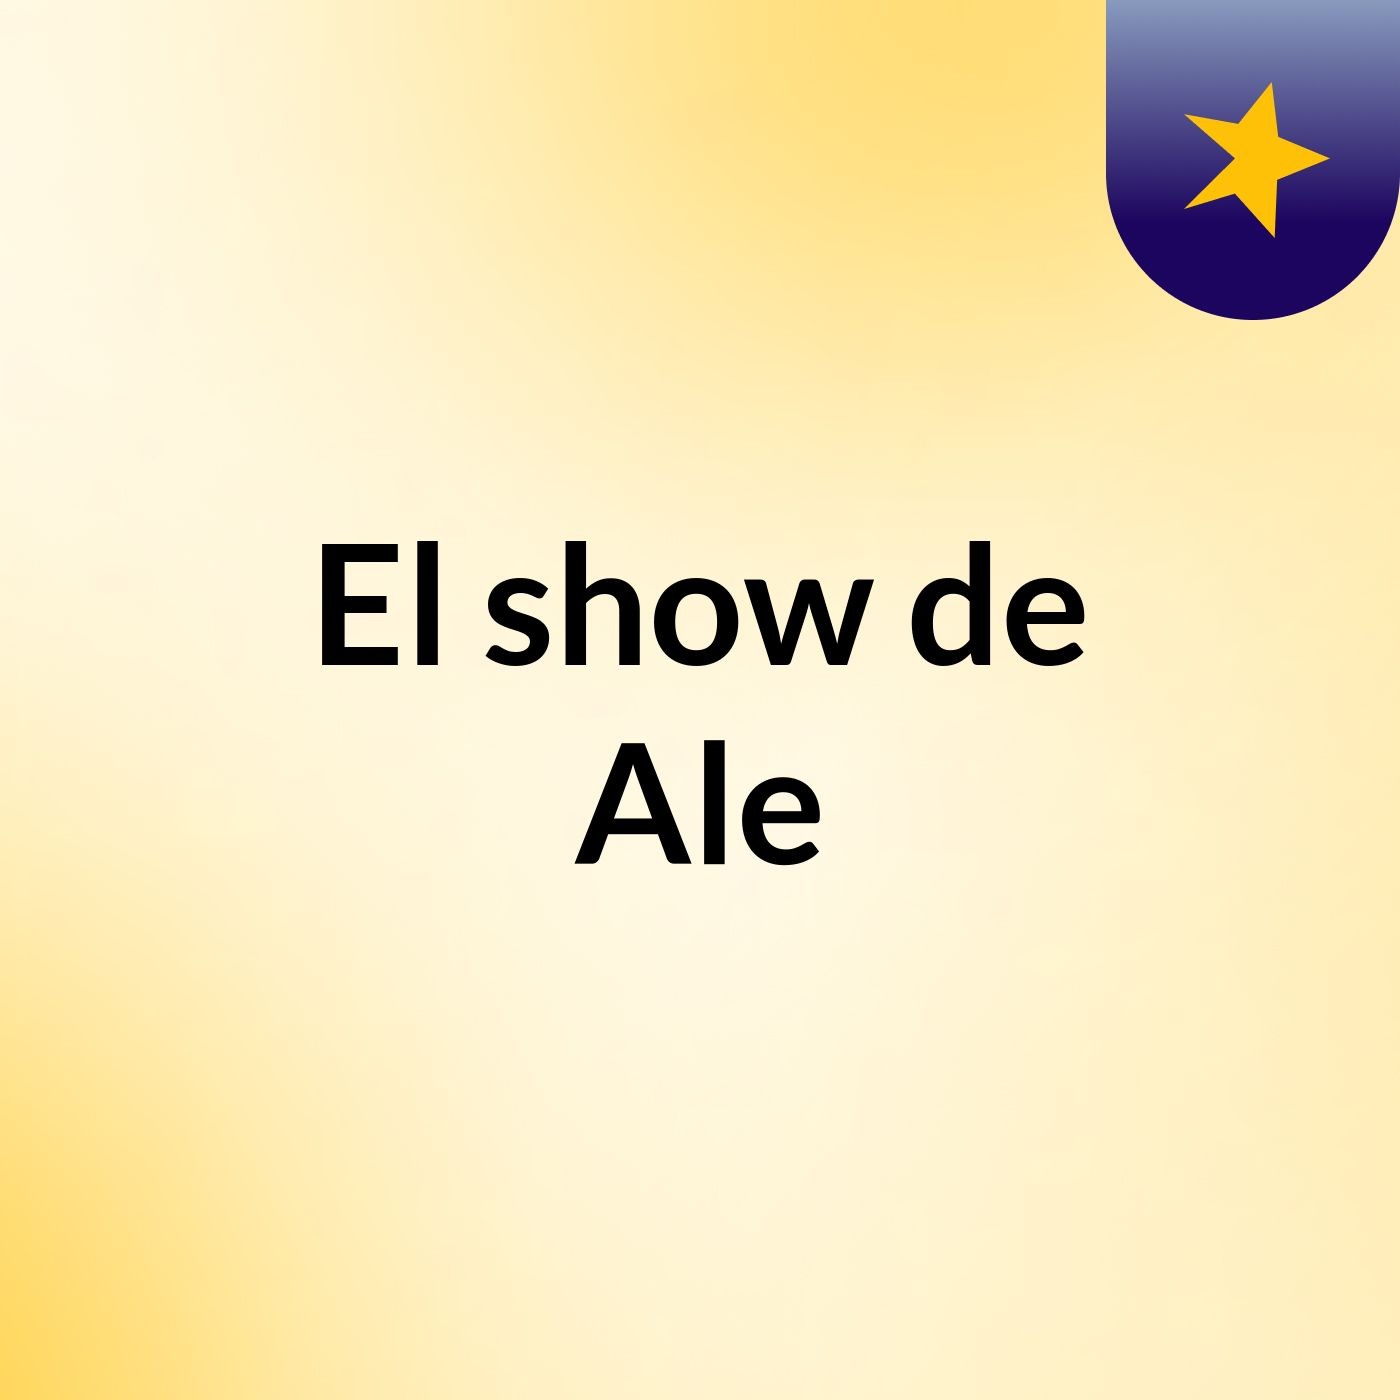 El show de Ale